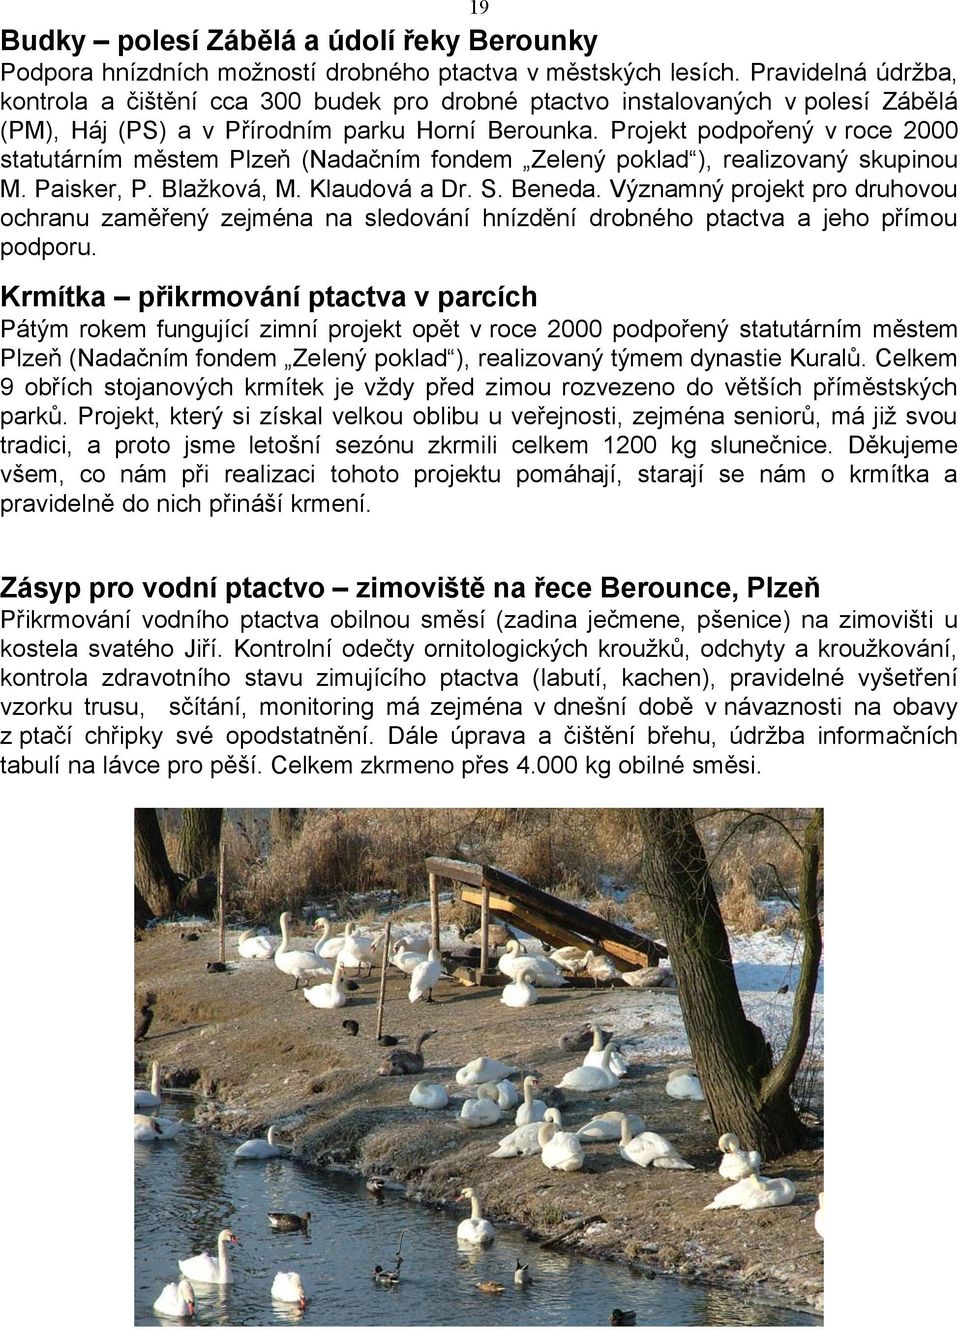 Projekt podpořený v roce 2000 statutárním městem Plzeň (Nadačním fondem Zelený poklad ), realizovaný skupinou M. Paisker, P. Blažková, M. Klaudová a Dr. S. Beneda.